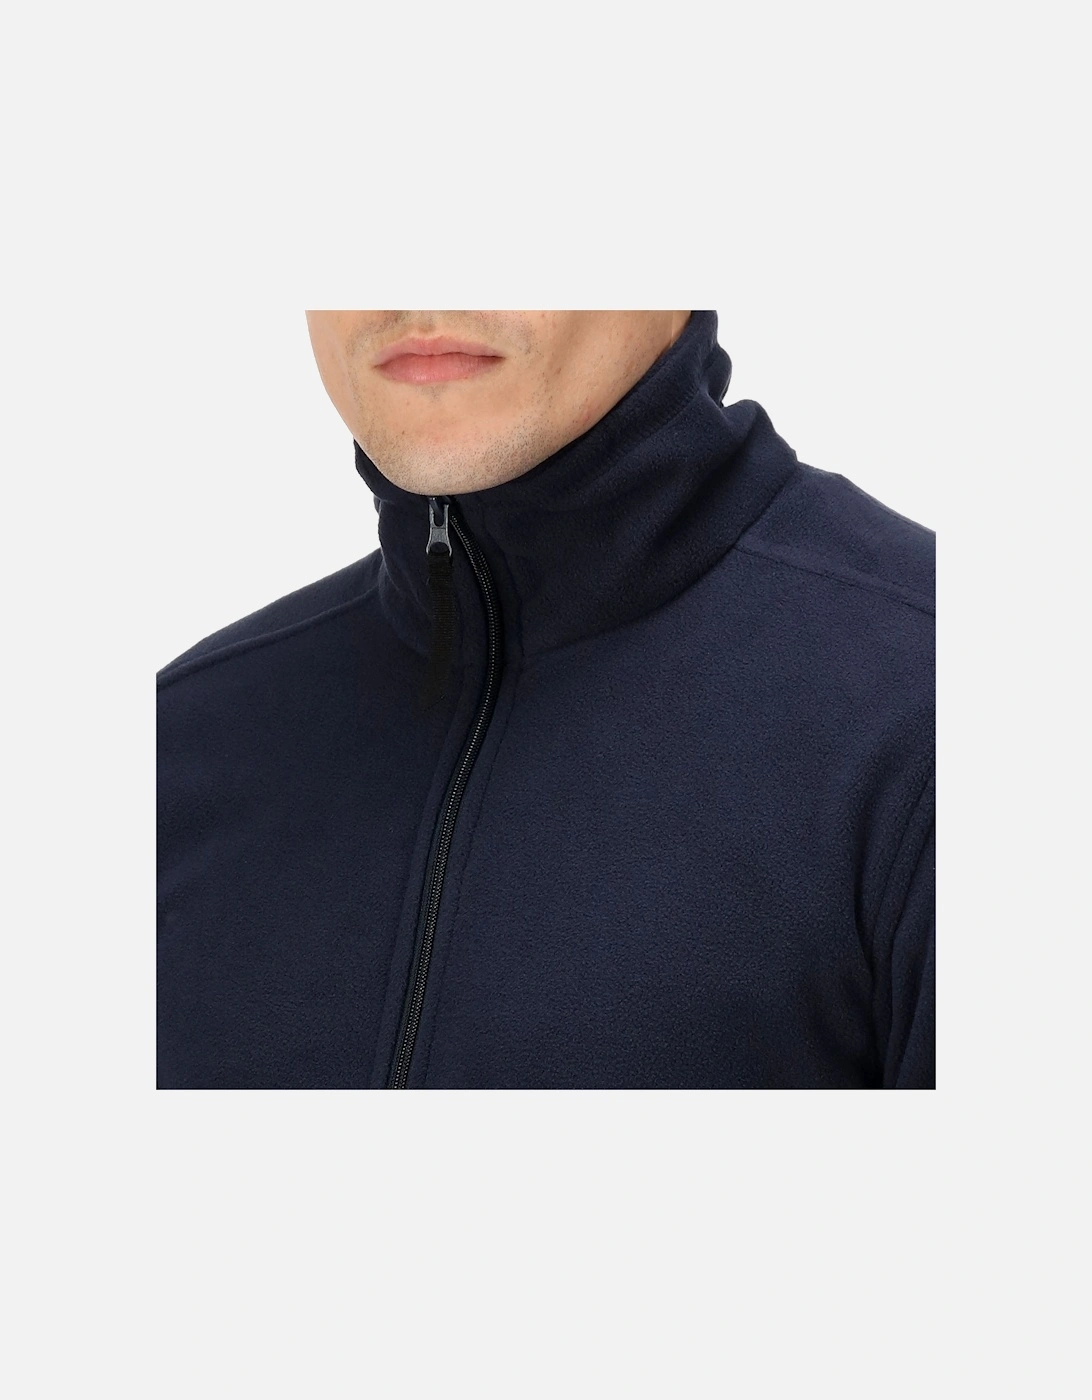 Professional Mens Micro Zip Full Zip Fleece Jacket